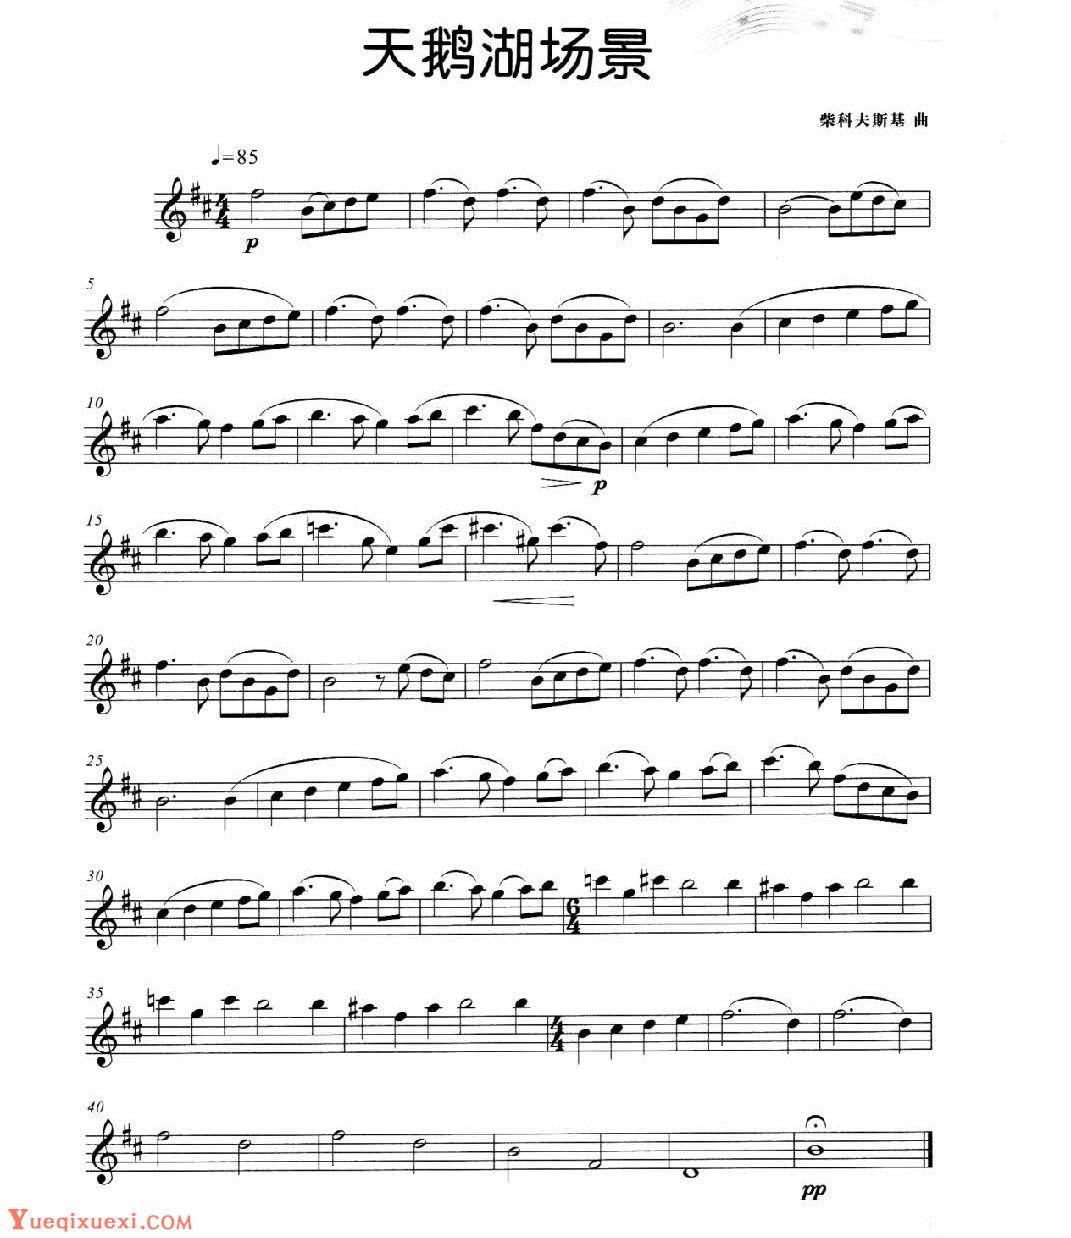 中国笛子名曲《欢乐歌 江南丝竹》-笛子曲谱 - 乐器学习网